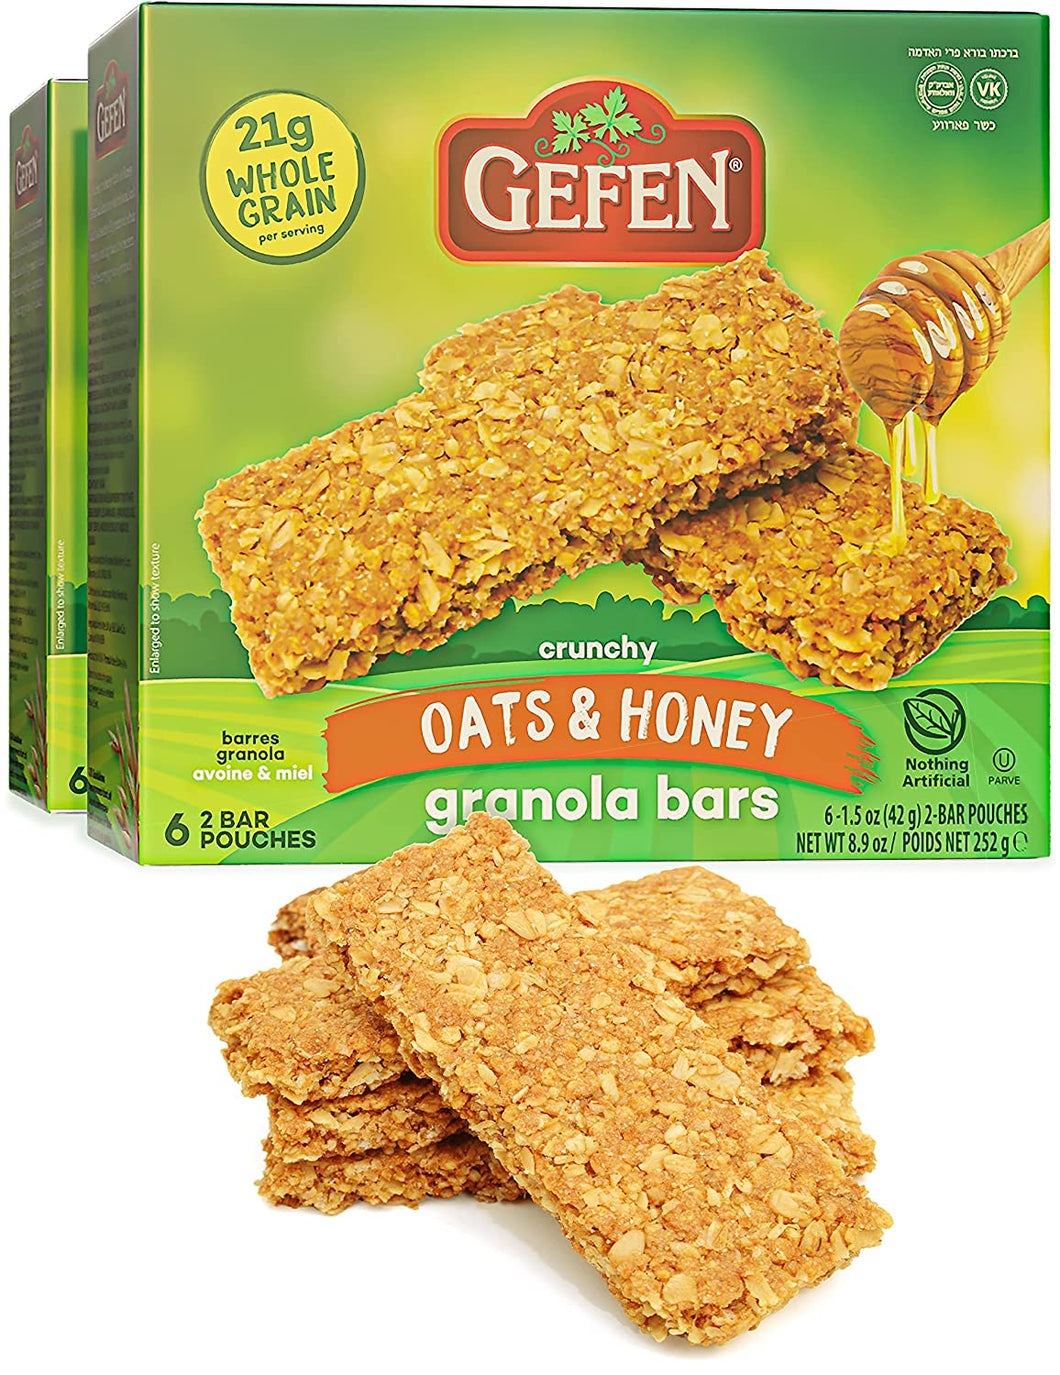 Barres granola Gefen, avoine et miel, Paquet de 12 